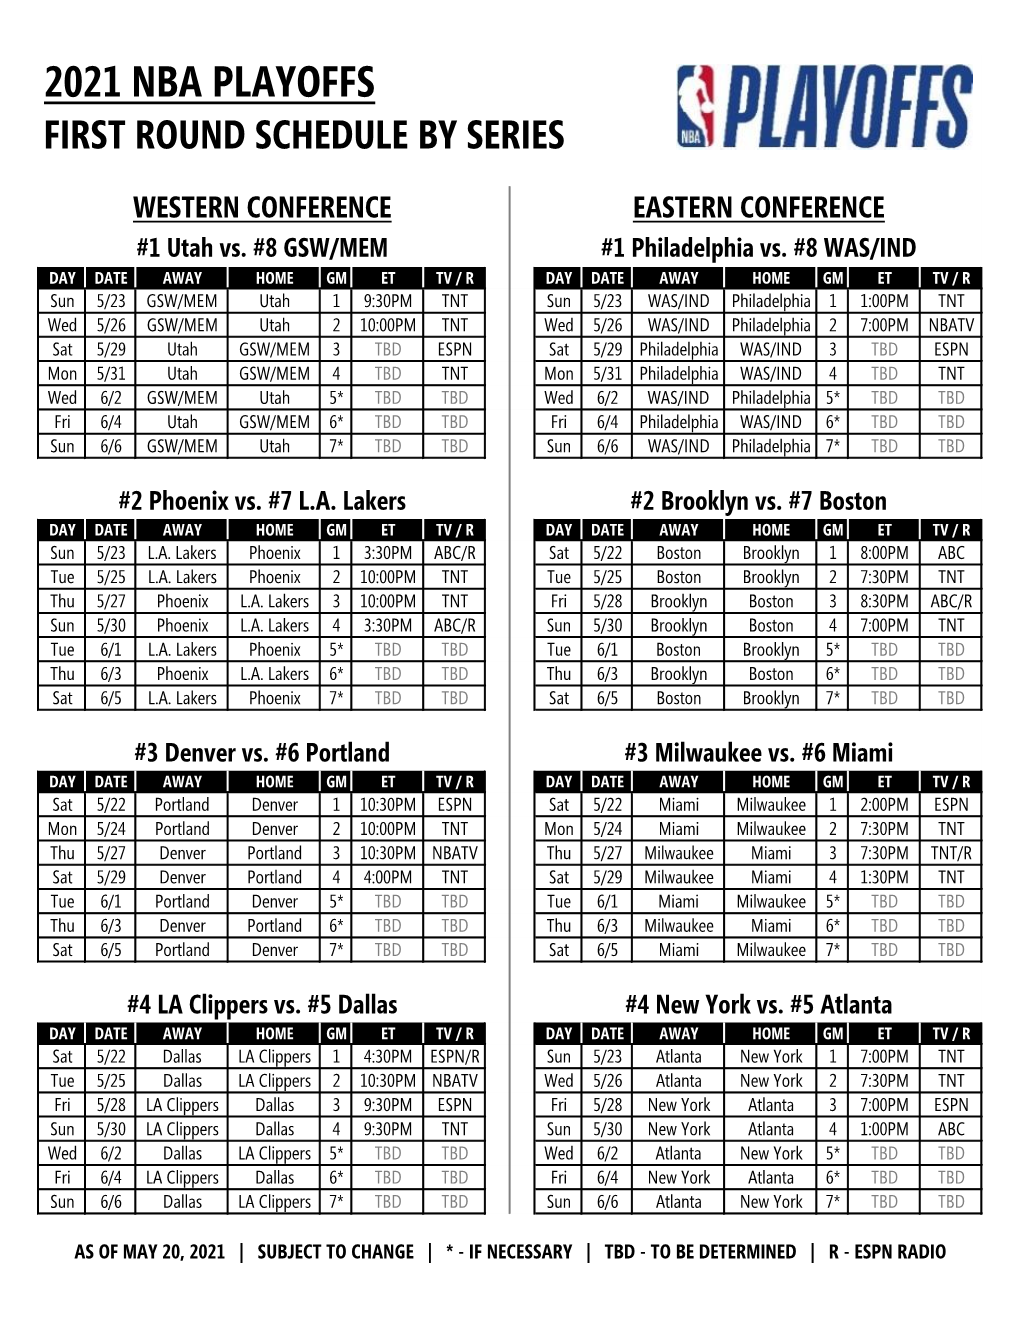 2021 Nba Playoffs First Round Schedule by Series